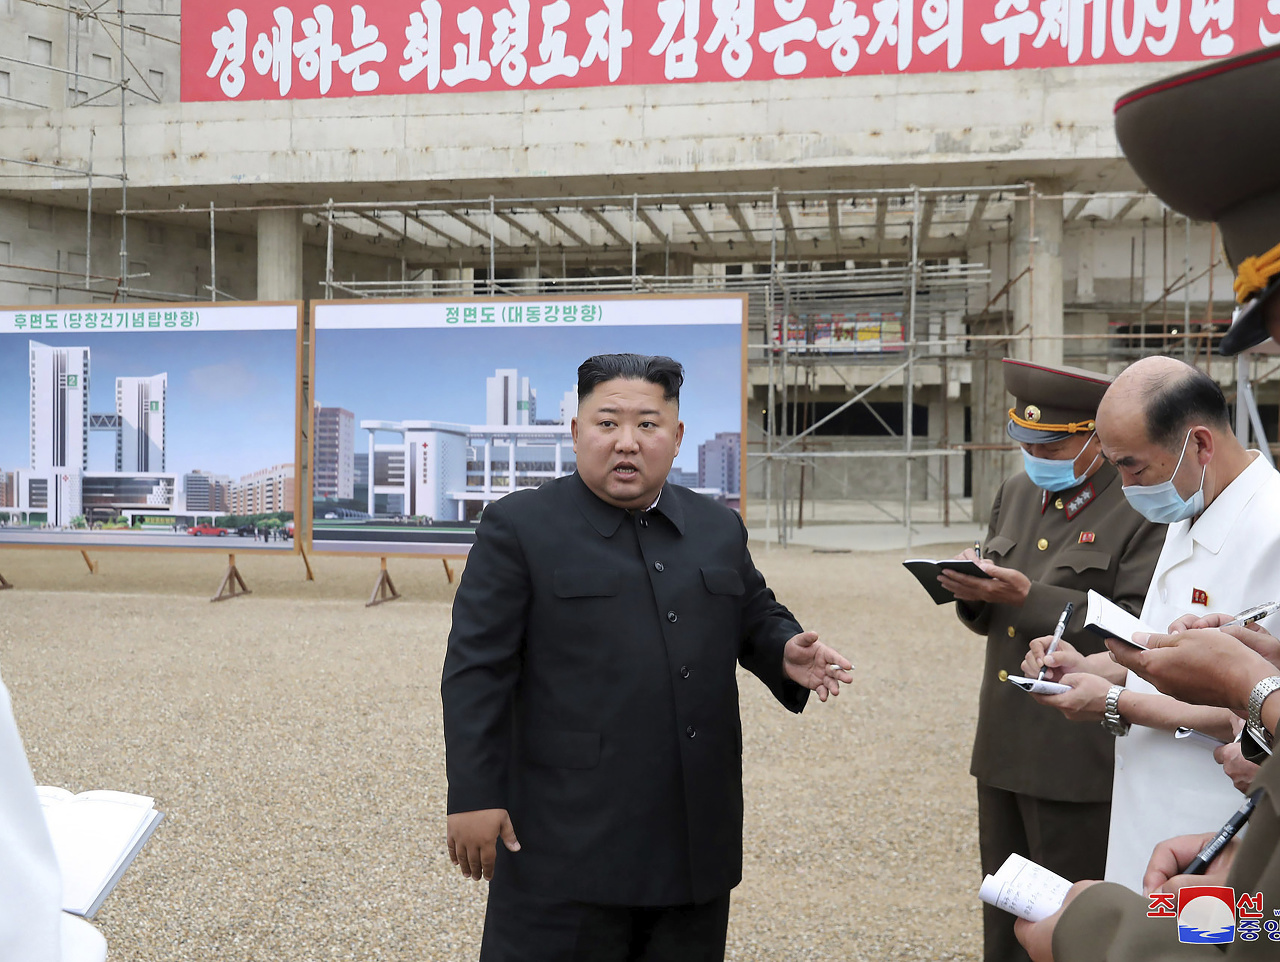 Severokórejský vodca Kim Čong-un nariadil prepustenie viacerých ľudí z vedenia výstavby novej nemocnice v hlavnom meste Pchjongjang 